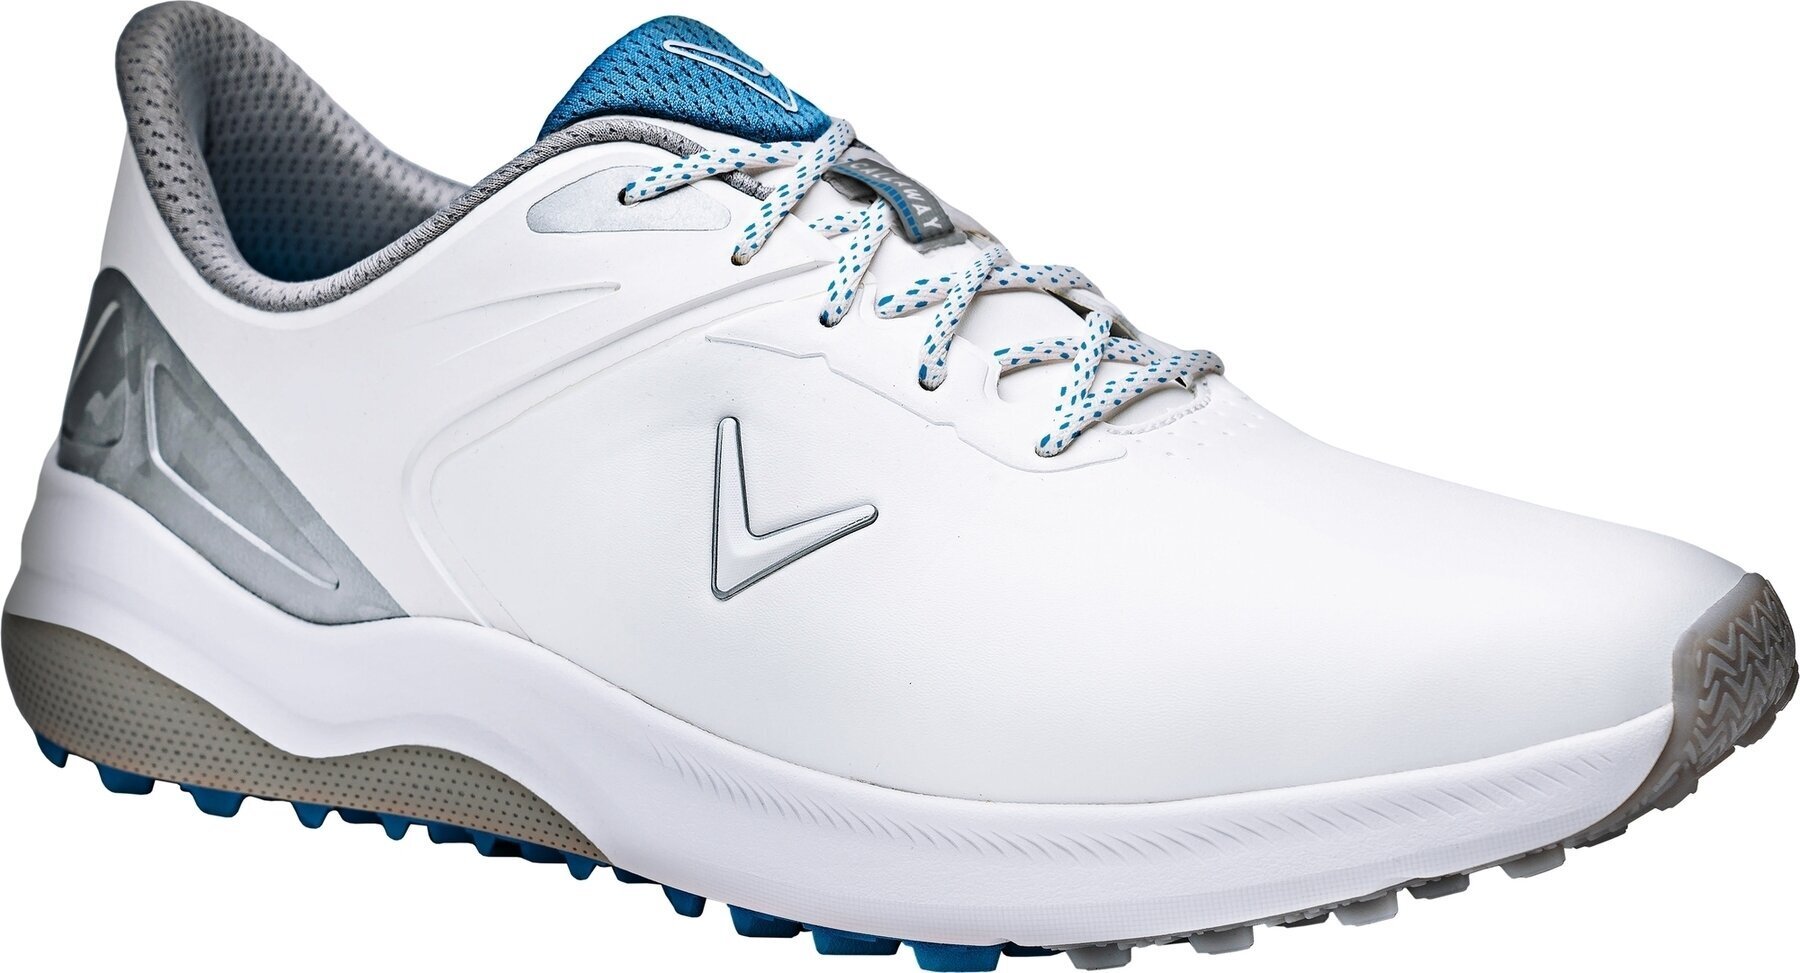 Ανδρικό Παπούτσι για Γκολφ Callaway Lazer Mens Golf Shoes White/Silver 42,5